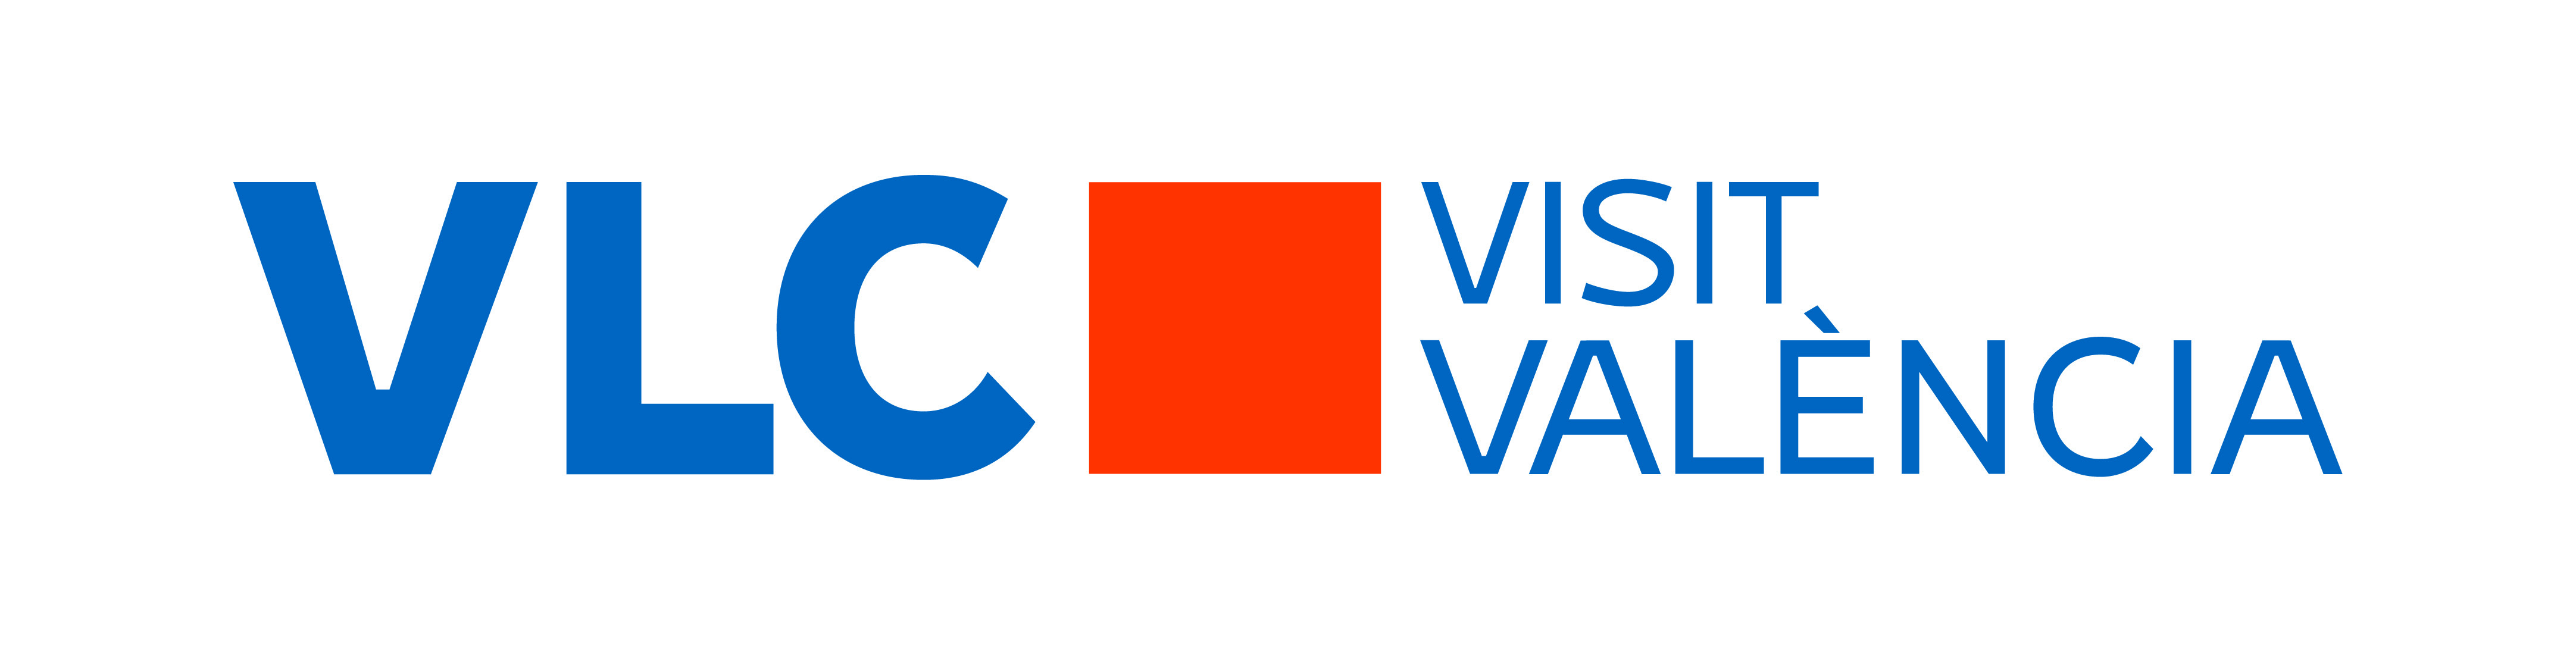 visit valencia organigrama